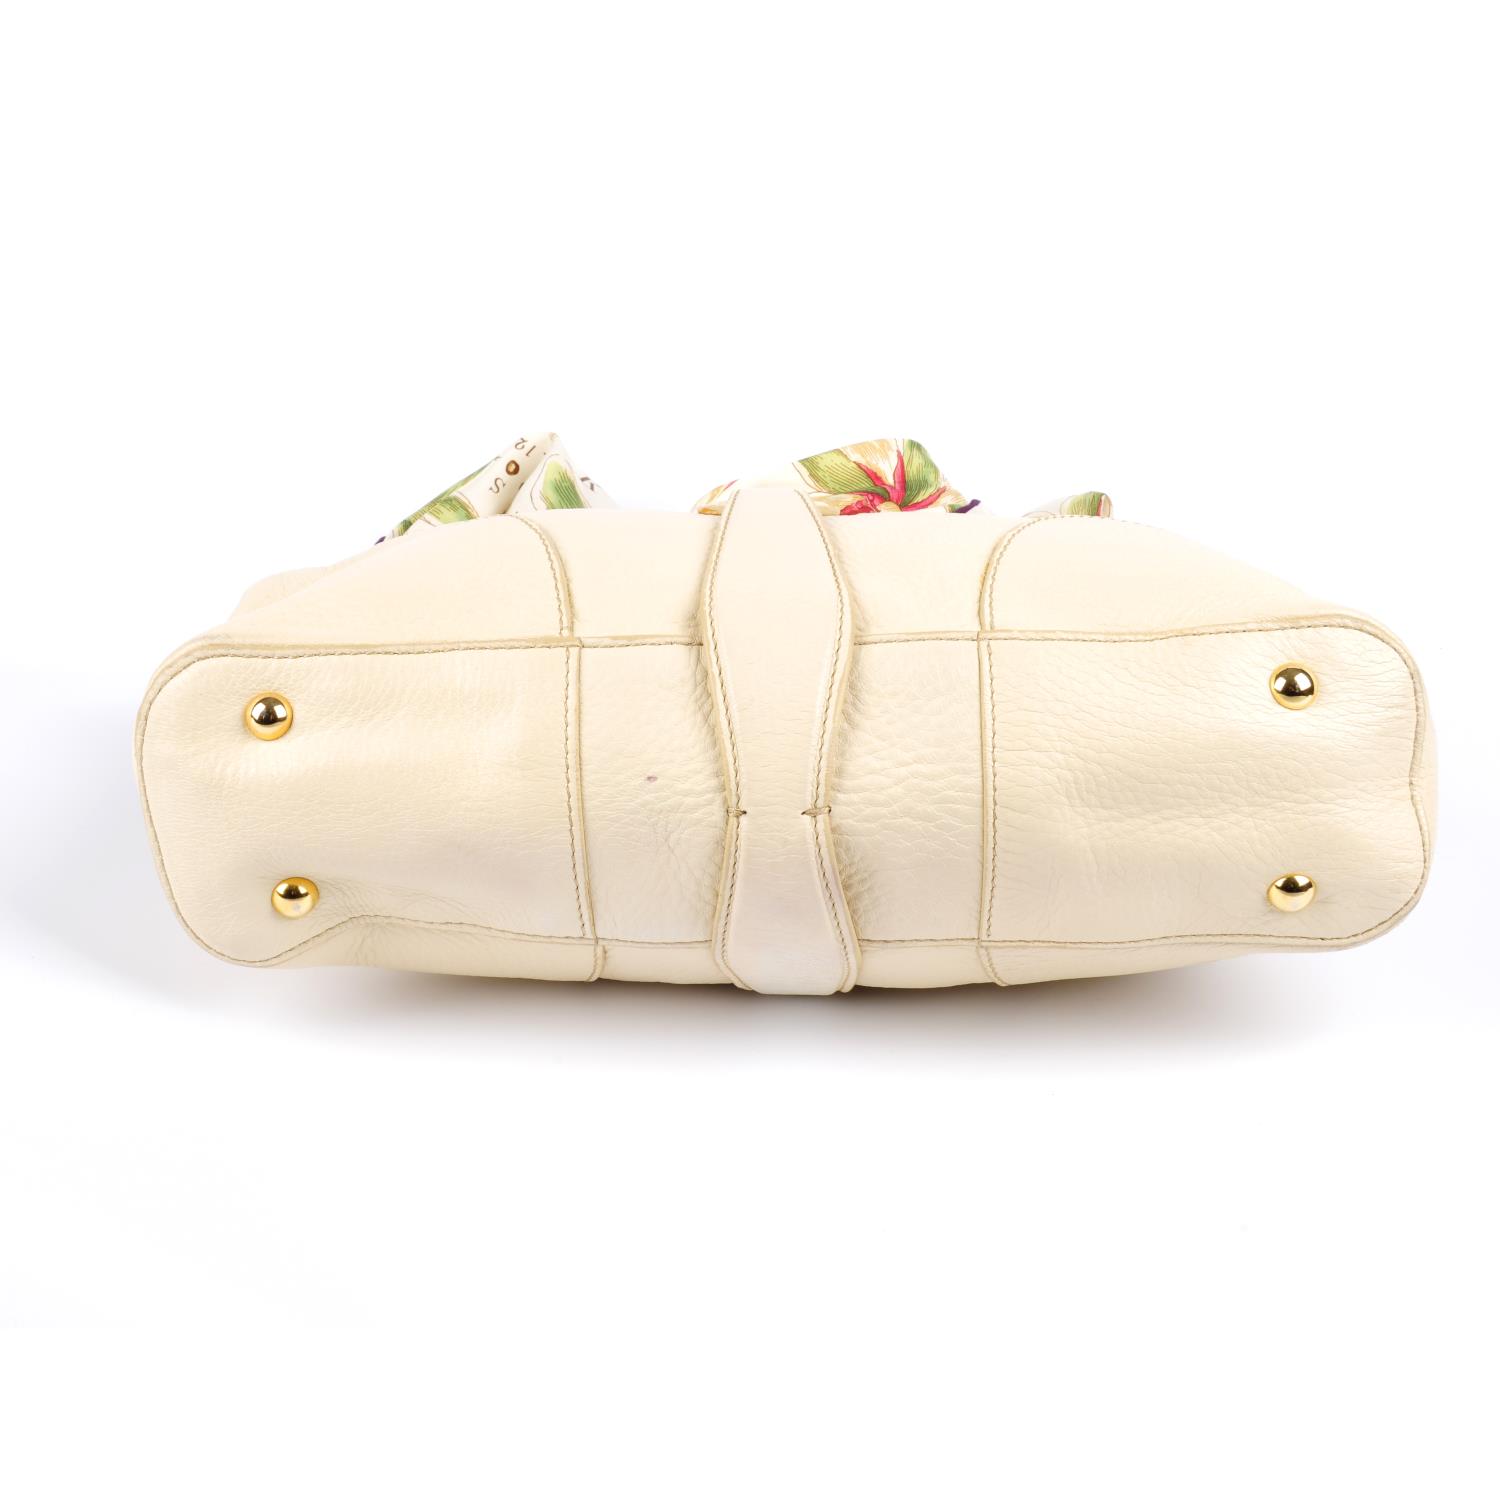 ASPREY - a cream handbag with scarf handle. - Image 4 of 4